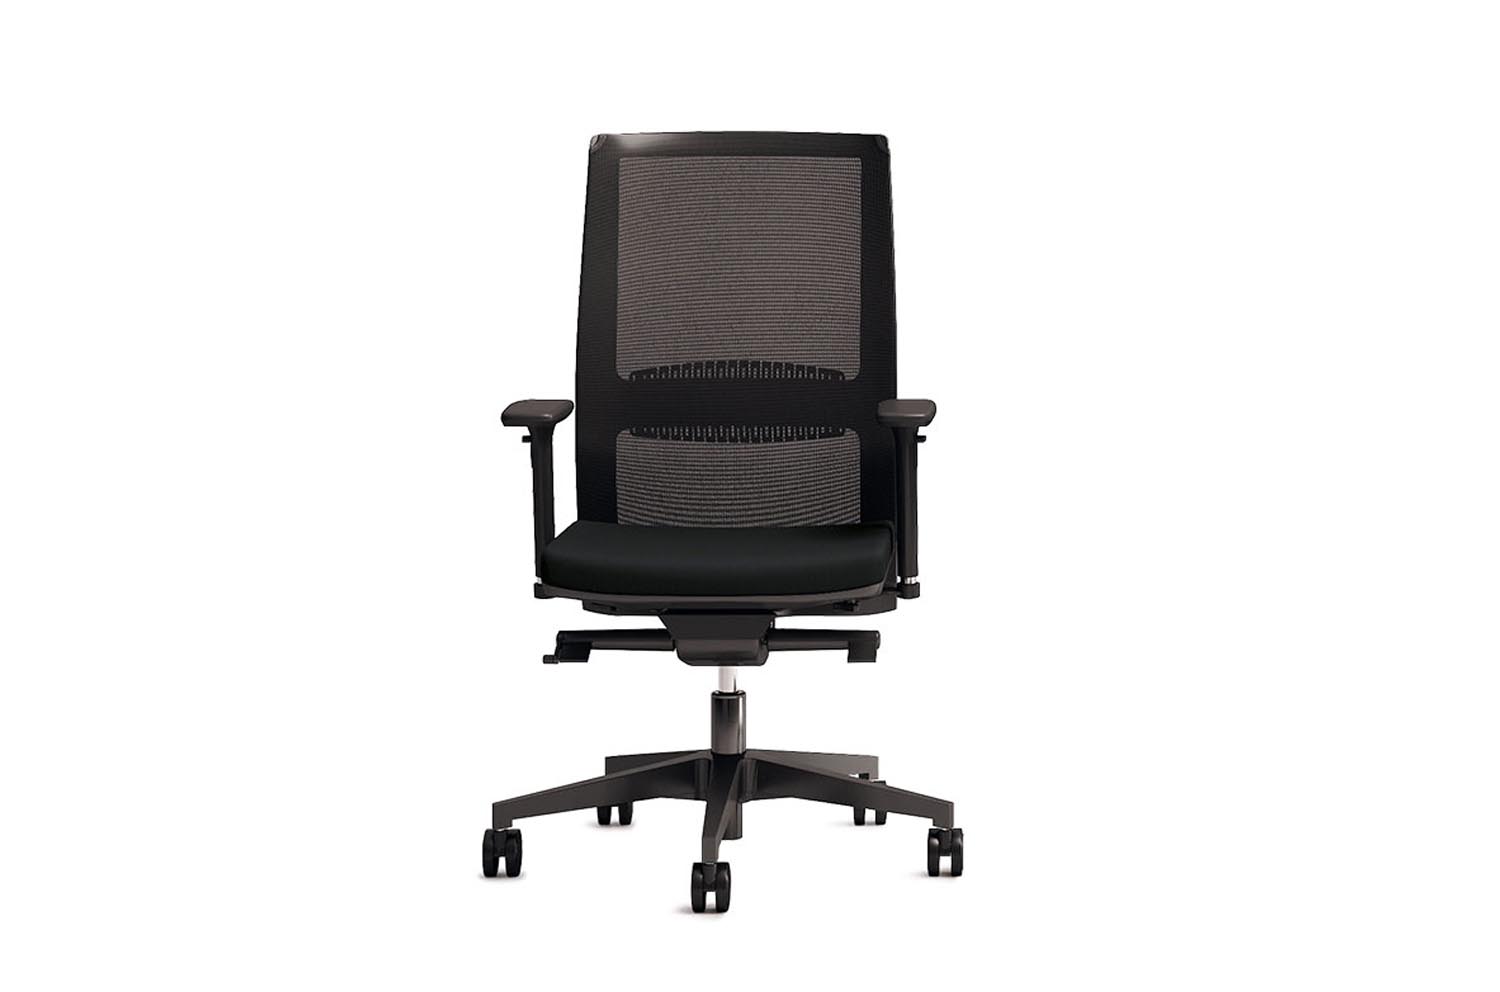 Спинка кресла. Компьютерное кресло College h-298fa-1-2. Офисный стул Pegus сподлокотниками s01472 сетка се. Кресло сеточное 6210. Кресло "Иствуд", kh01691.